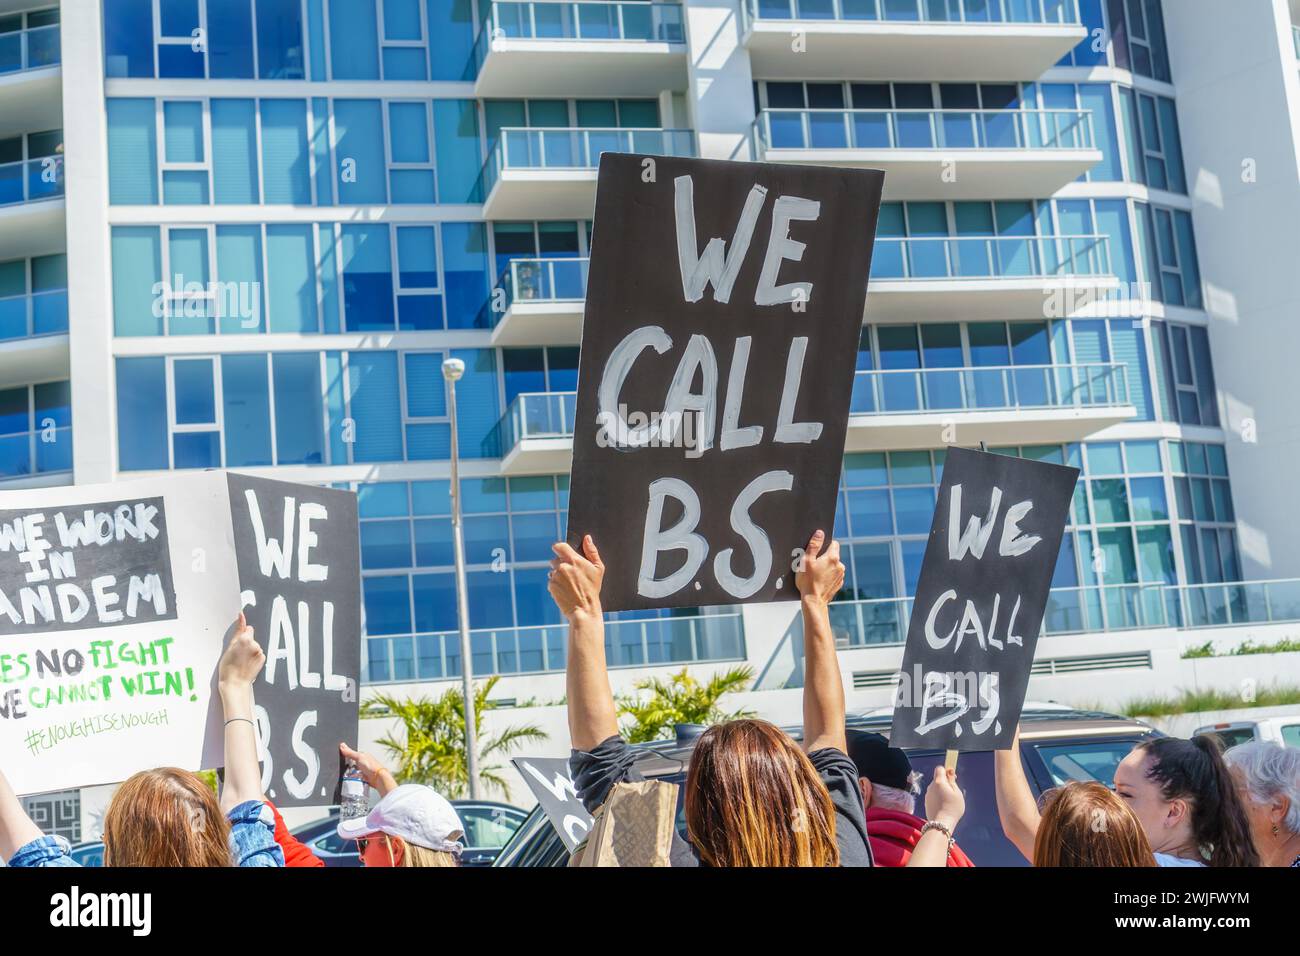 Sarasota, Floride, États-Unis - 24 mars 2018 - les manifestants se rassemblent lors de la manifestation organisée par des étudiants, la marche pour nos vies, avec une pancarte indiquant « We Call BS » Banque D'Images